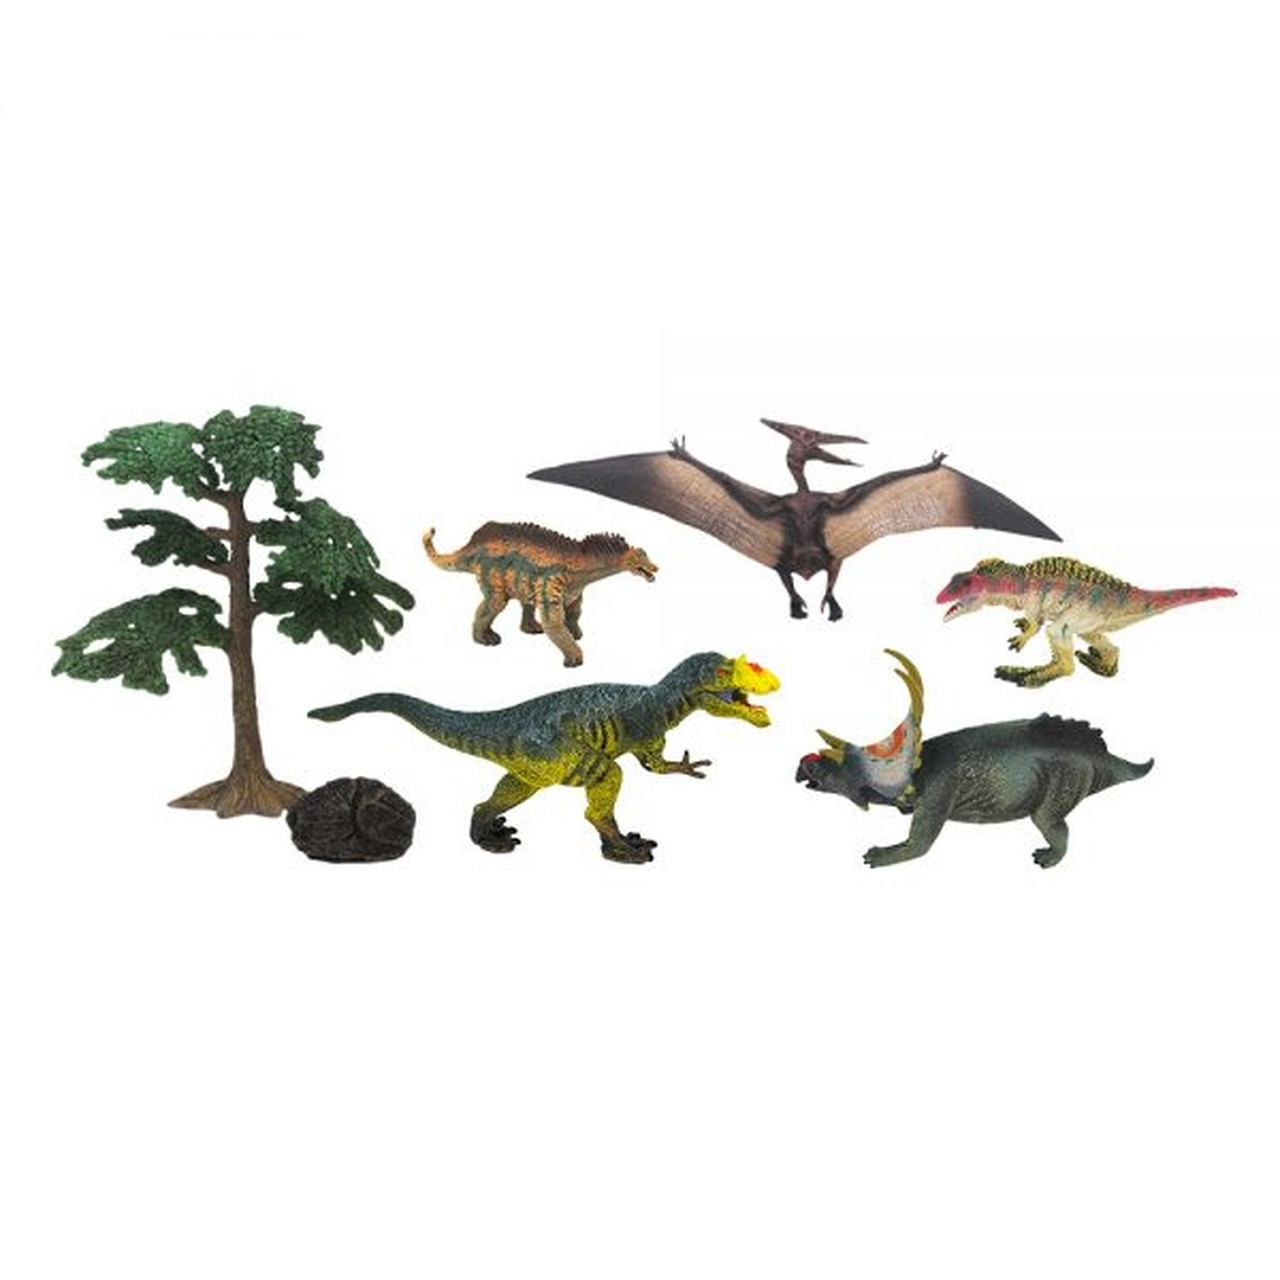 Brinquedo Mundo Dos Dinossauros Modelo 2 - DmToys 5771